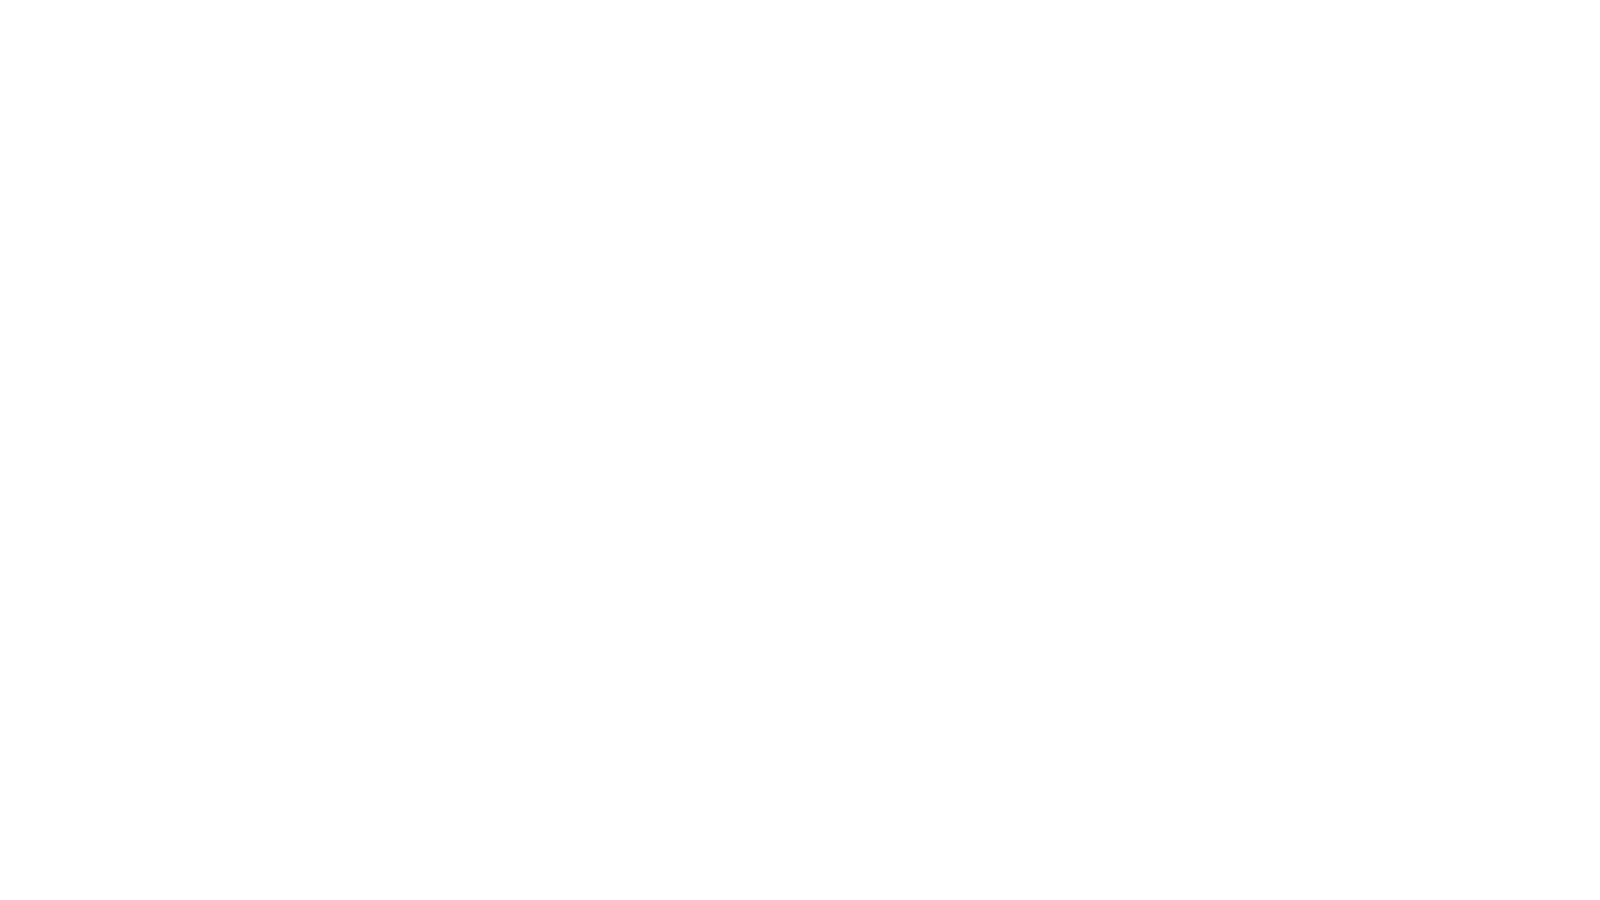 “Gérer son stress quand on est timide”
👉 Live animé par Marie-Thérèse de Fontenelle, Hypnothérapeute à Châteaurenard 

https://www.resalib.fr/praticien/42449-marie-therese-de-fontenelle-hypnotherapeute-chateaurenard

#sophrologie, #hypnothérapie, #stress